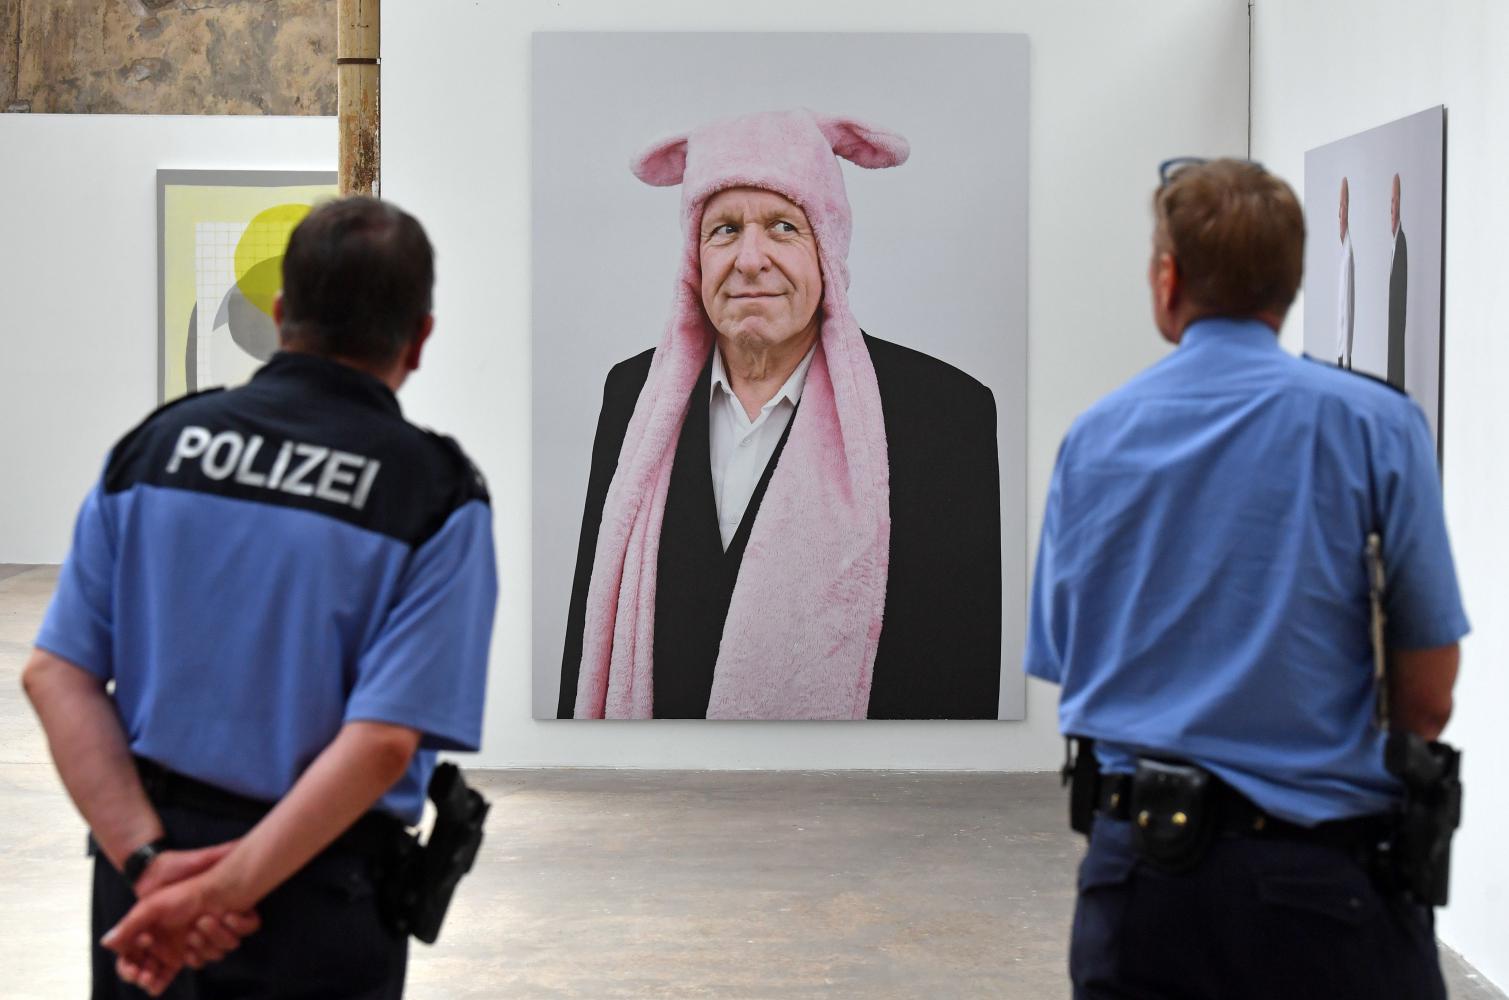  Polizisten vor einer Arbeit von Louise Walleneit in der Werkschauhalle der Leipziger Baumwollspinnerei. Die 26. Leipziger Jahresausstellung begann nach einer hitzigen Debatte um einen AfD-nahen Künstler mit einer knappen Woche Verspätung 